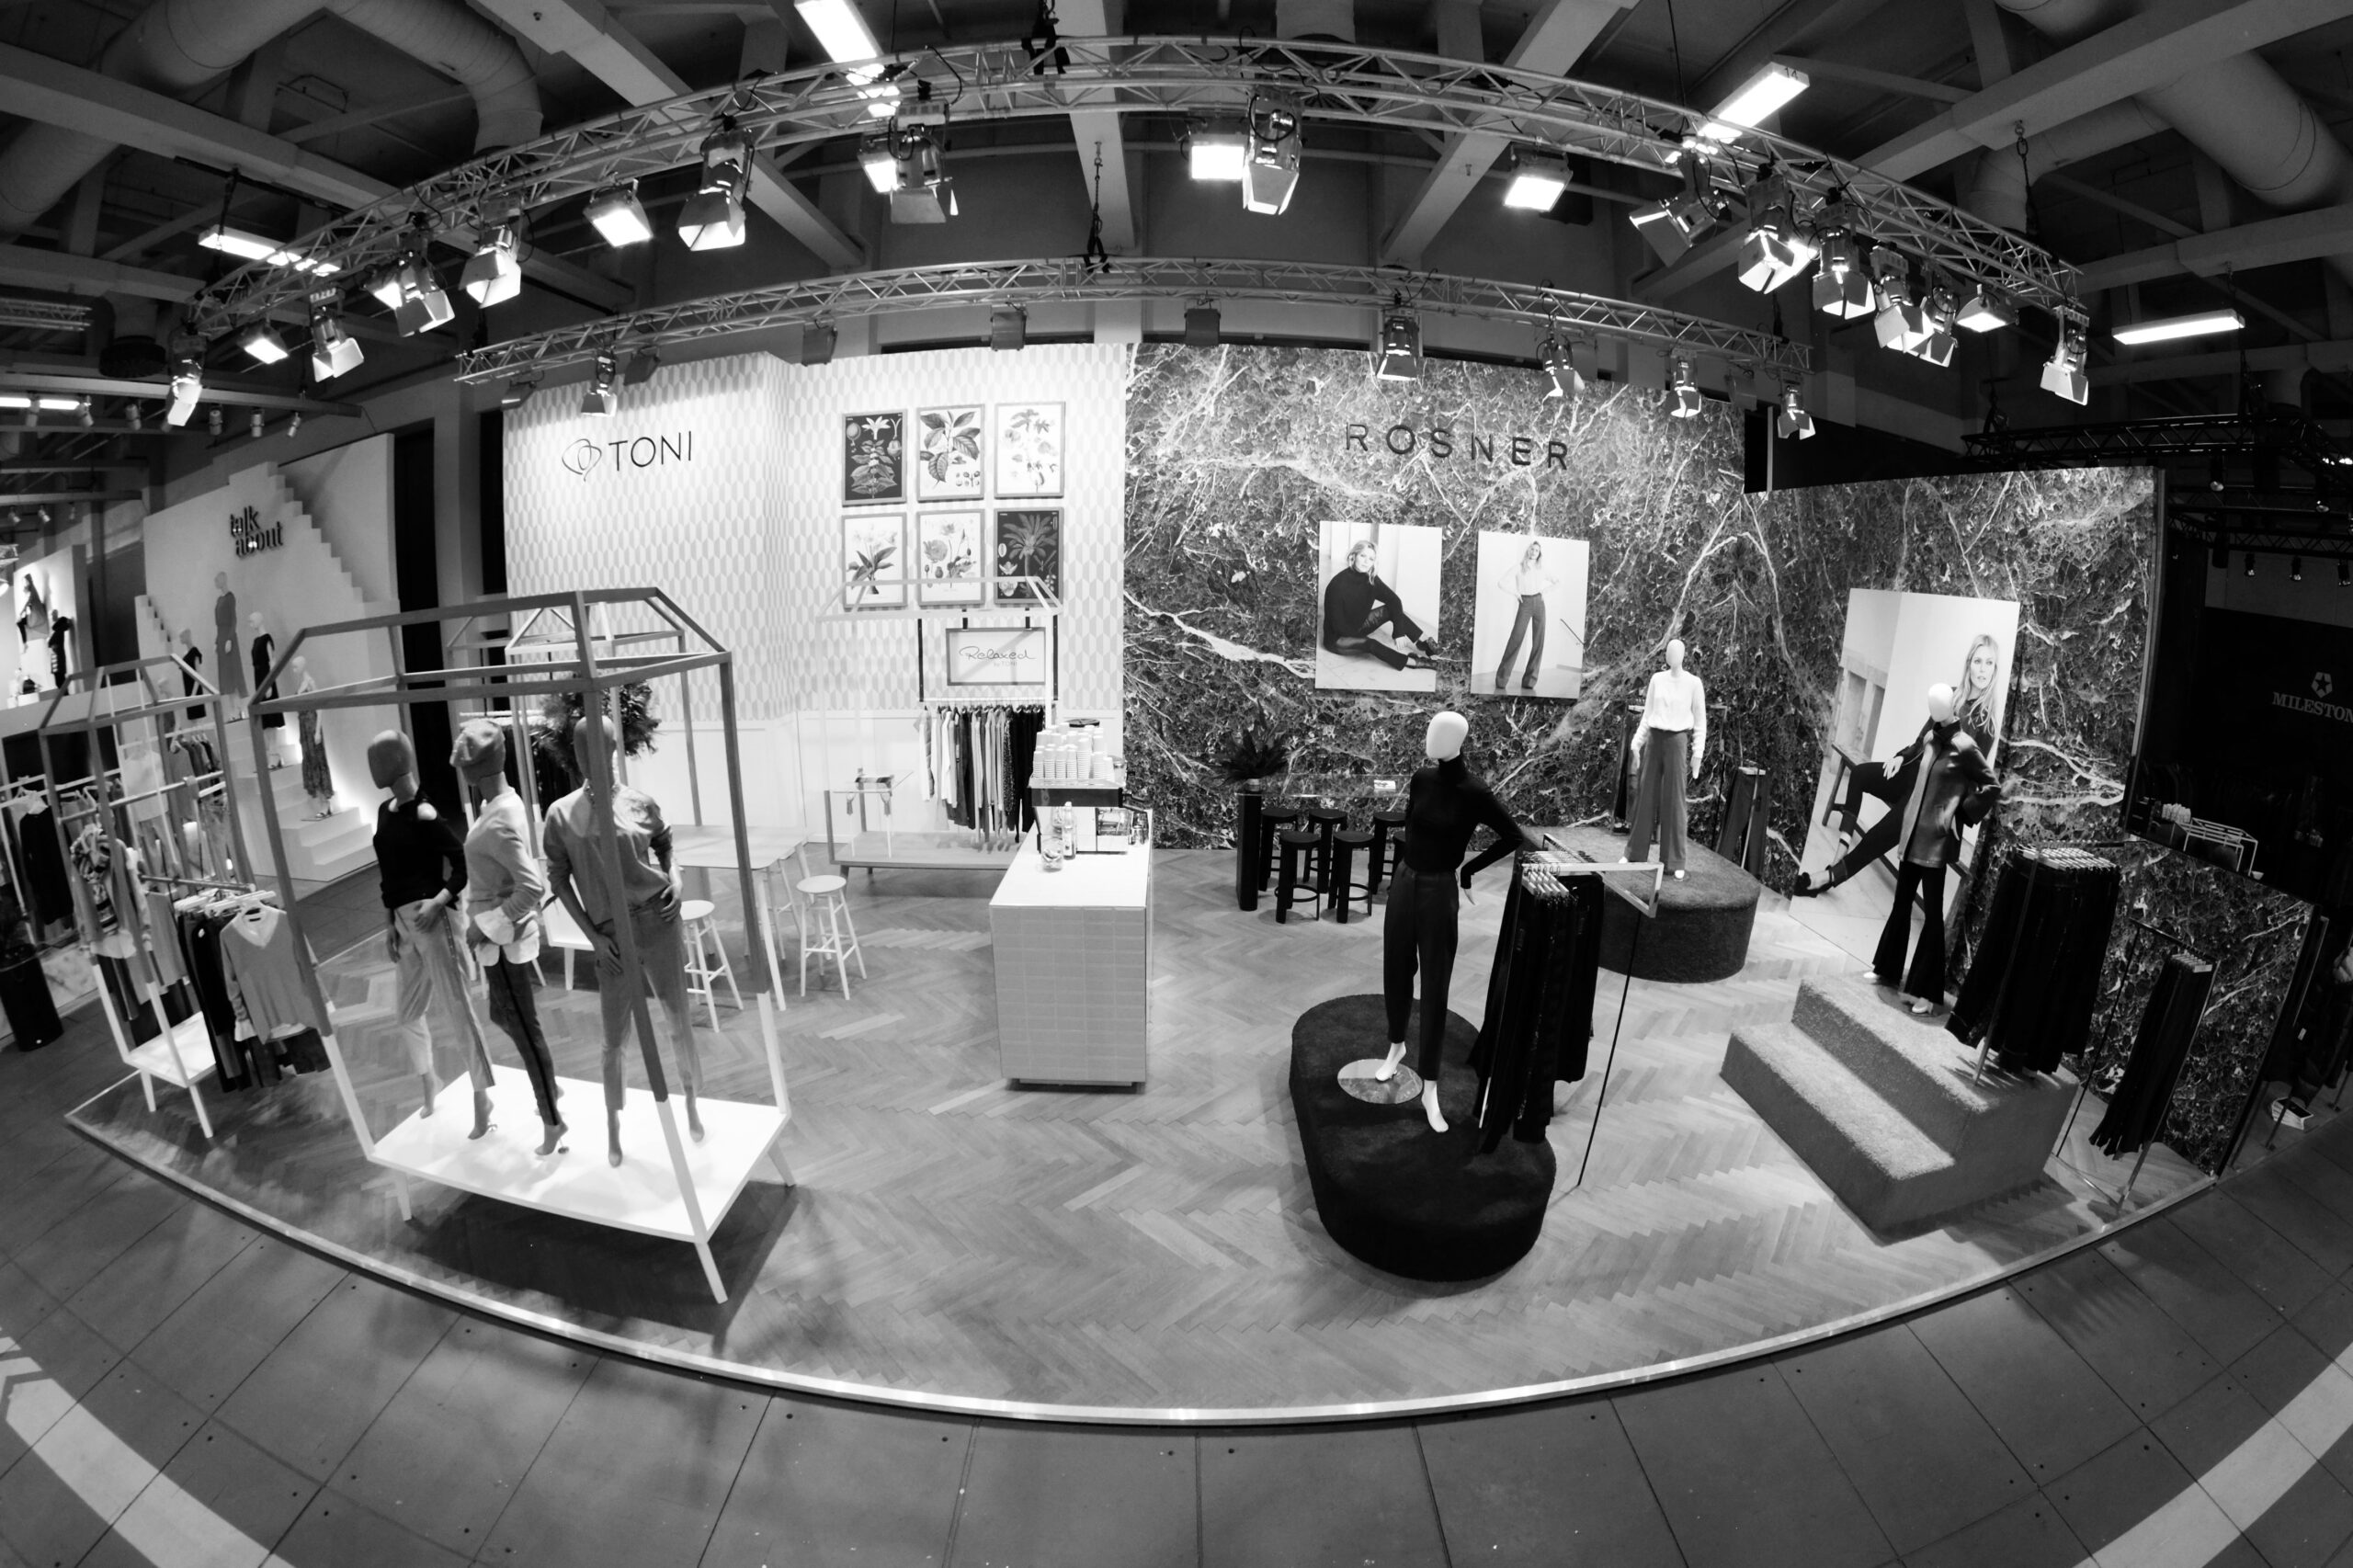 Fashion Messestand Design für deutsche Mode Marken Toni und Rosner